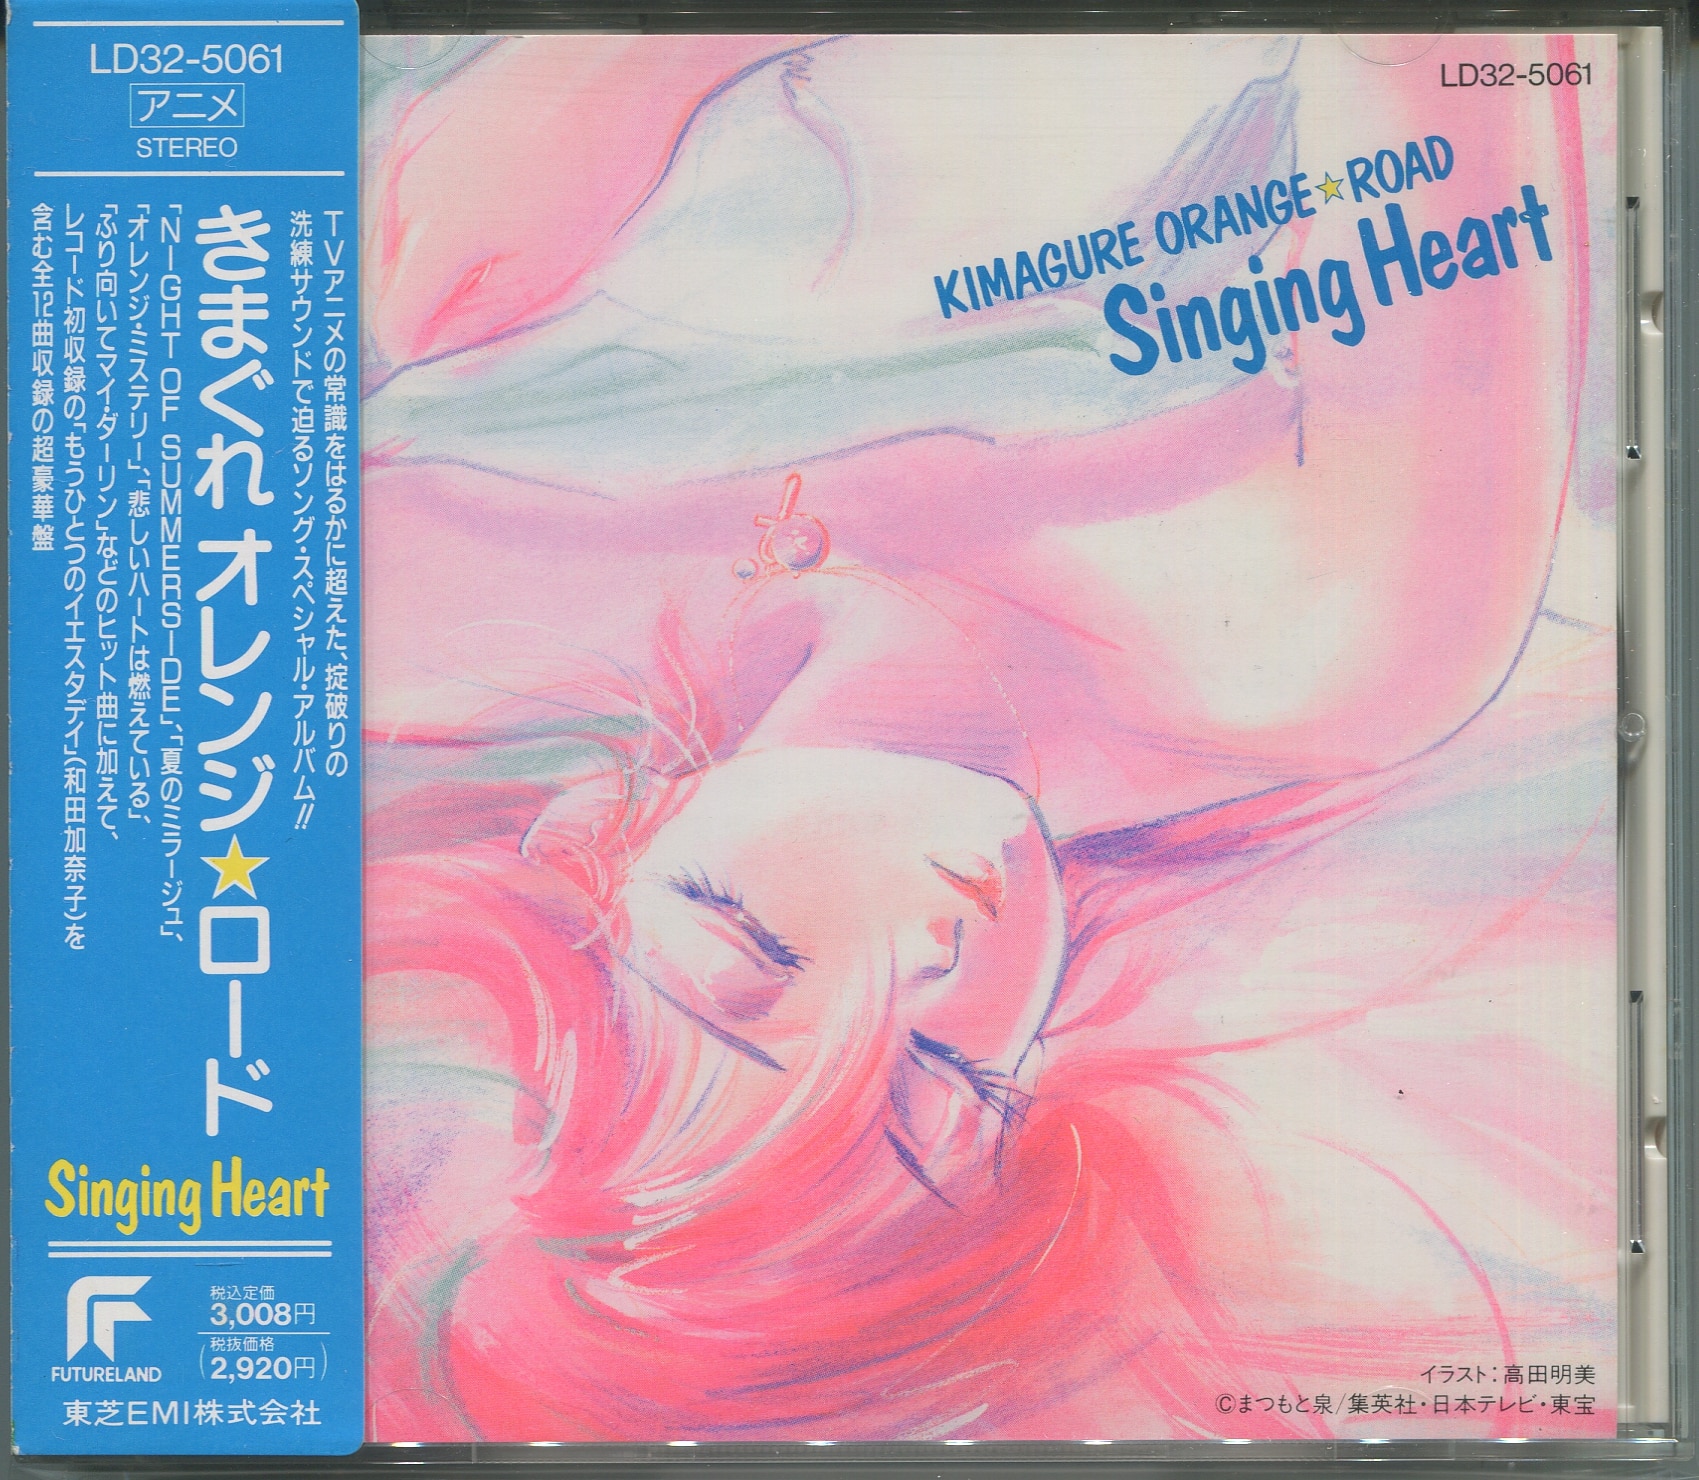 きまぐれオレンジ☆ロード Singing Heart2